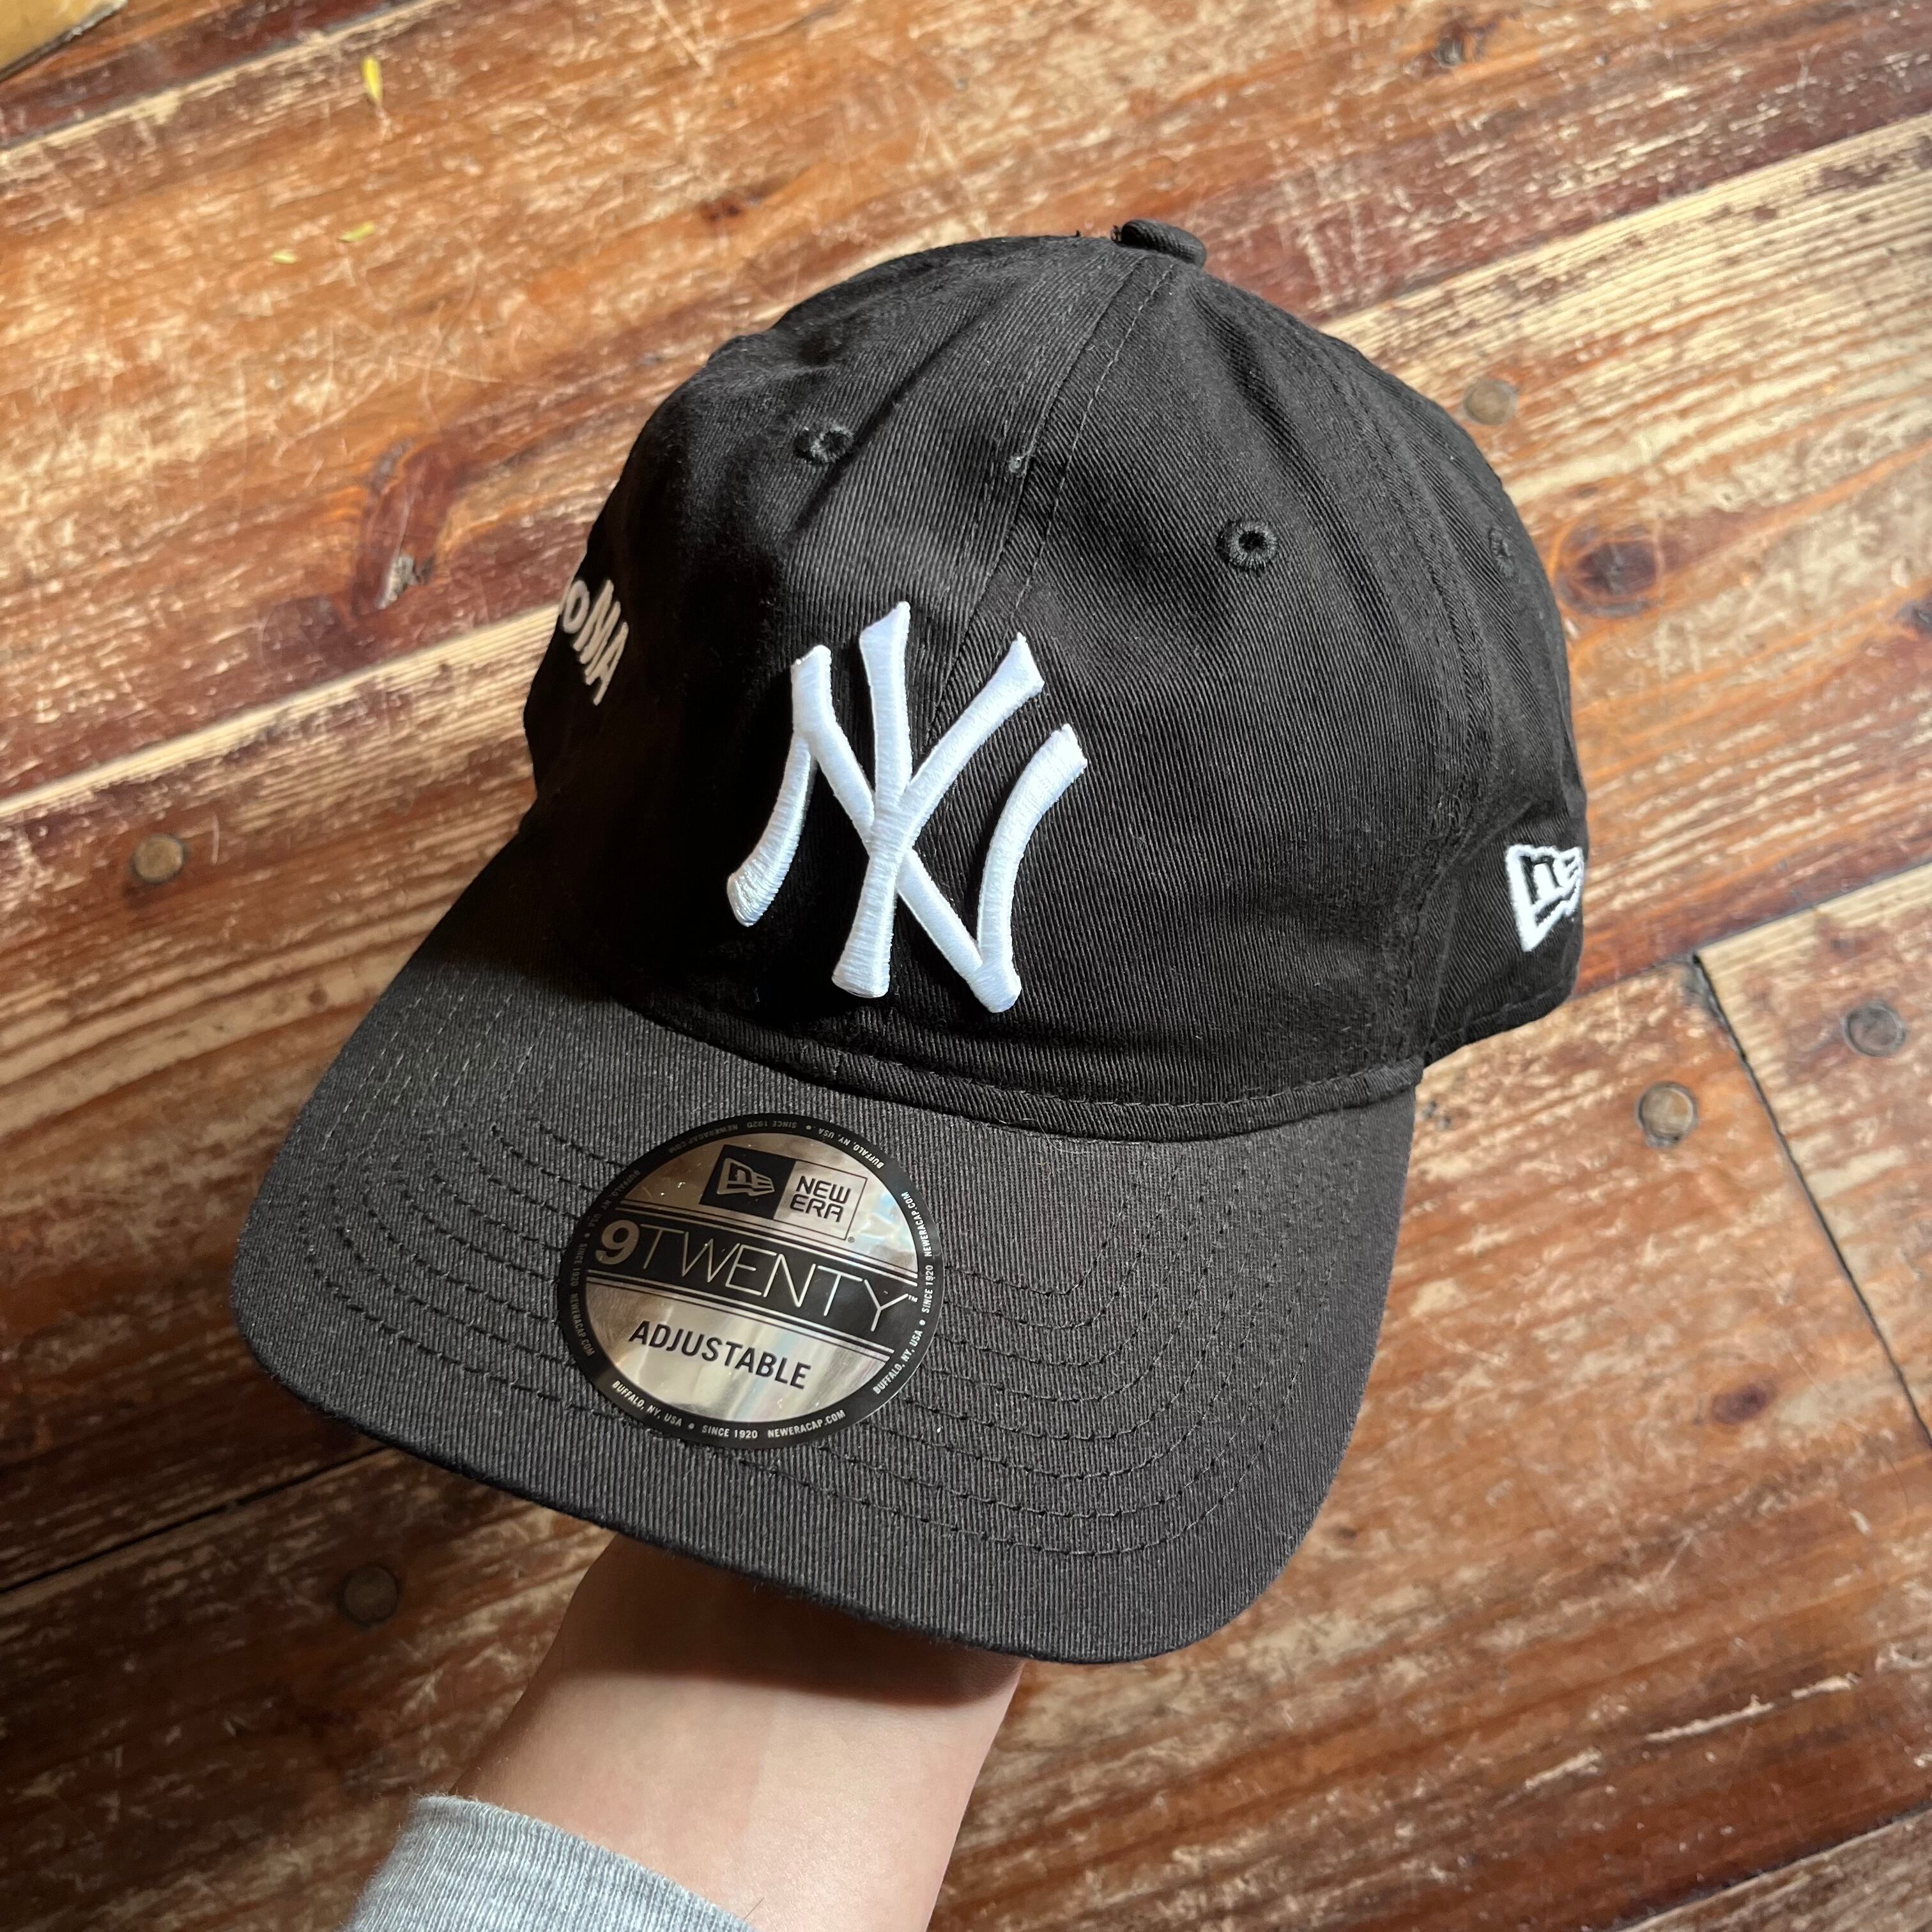 MOMA x New Era ”NY Yankees” ”NY Mets” Baseball Cap | Rei-mart